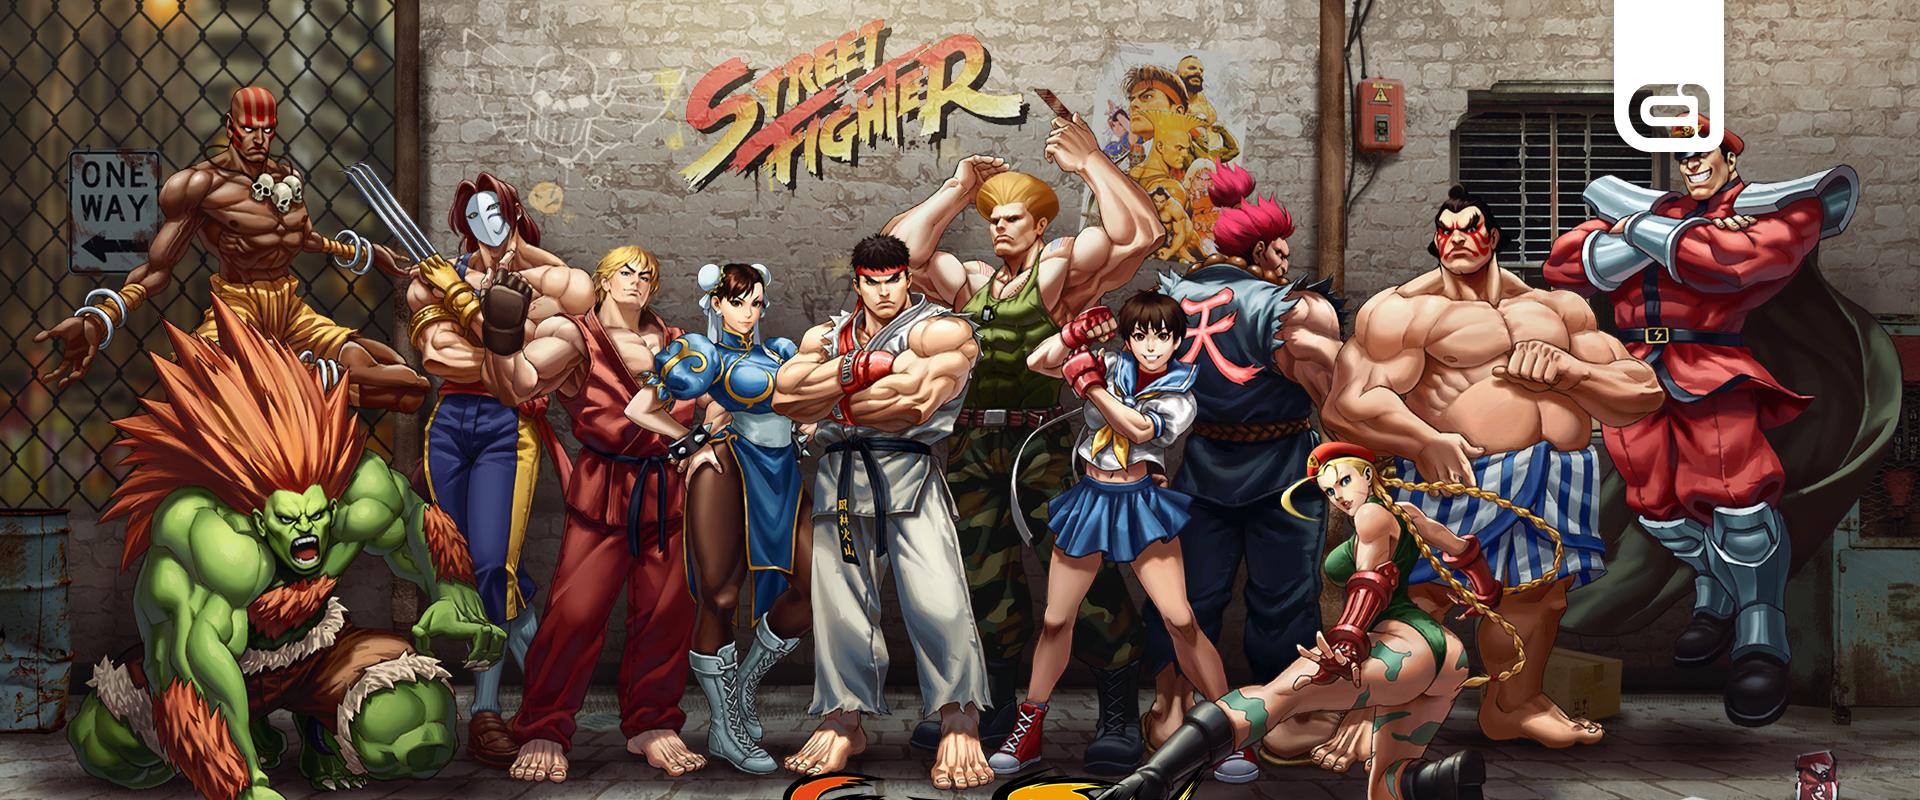 Legendás stúdióhoz kerültek a Street Fighter jogai és rögtön új film is készül